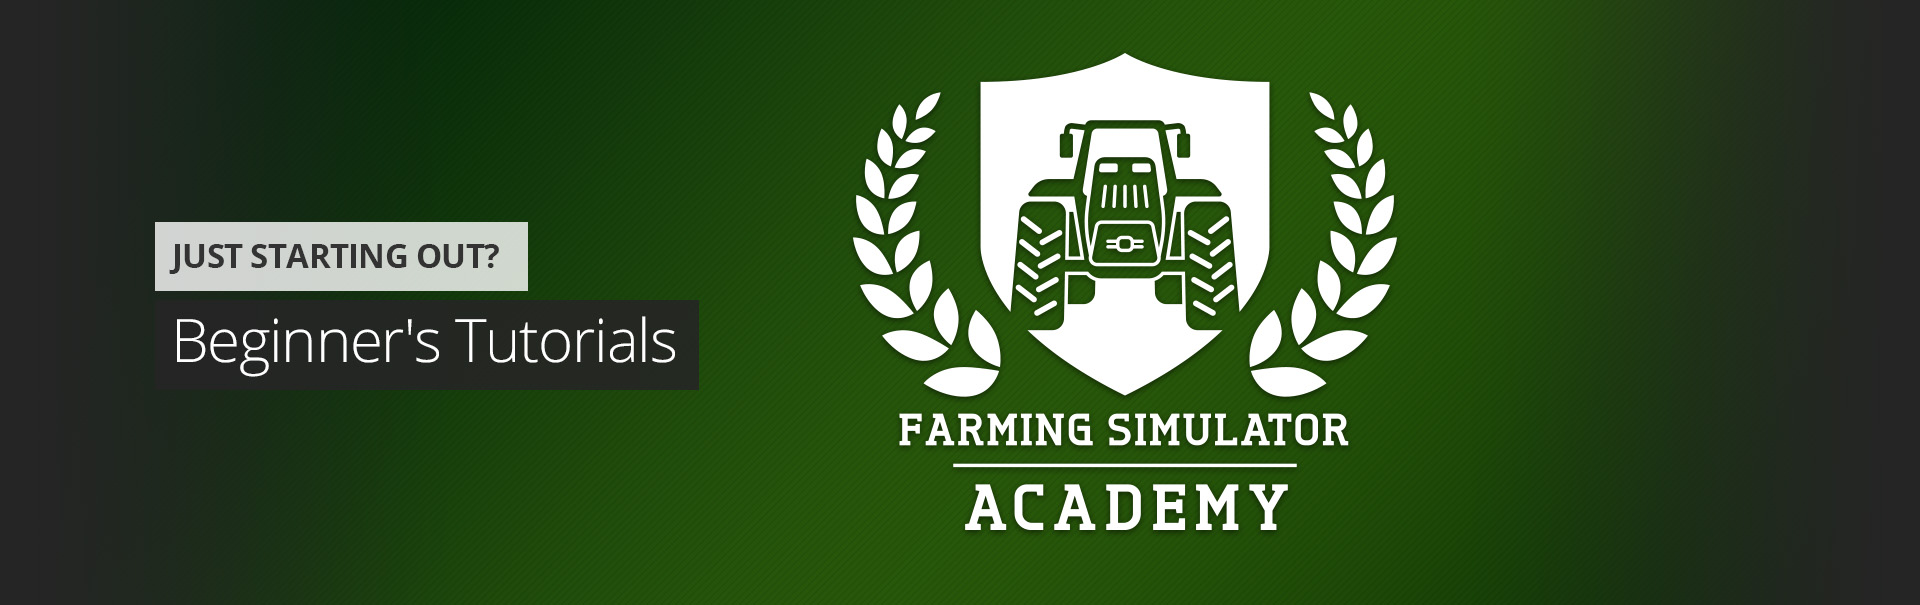 Jordbrukssimulator akademi